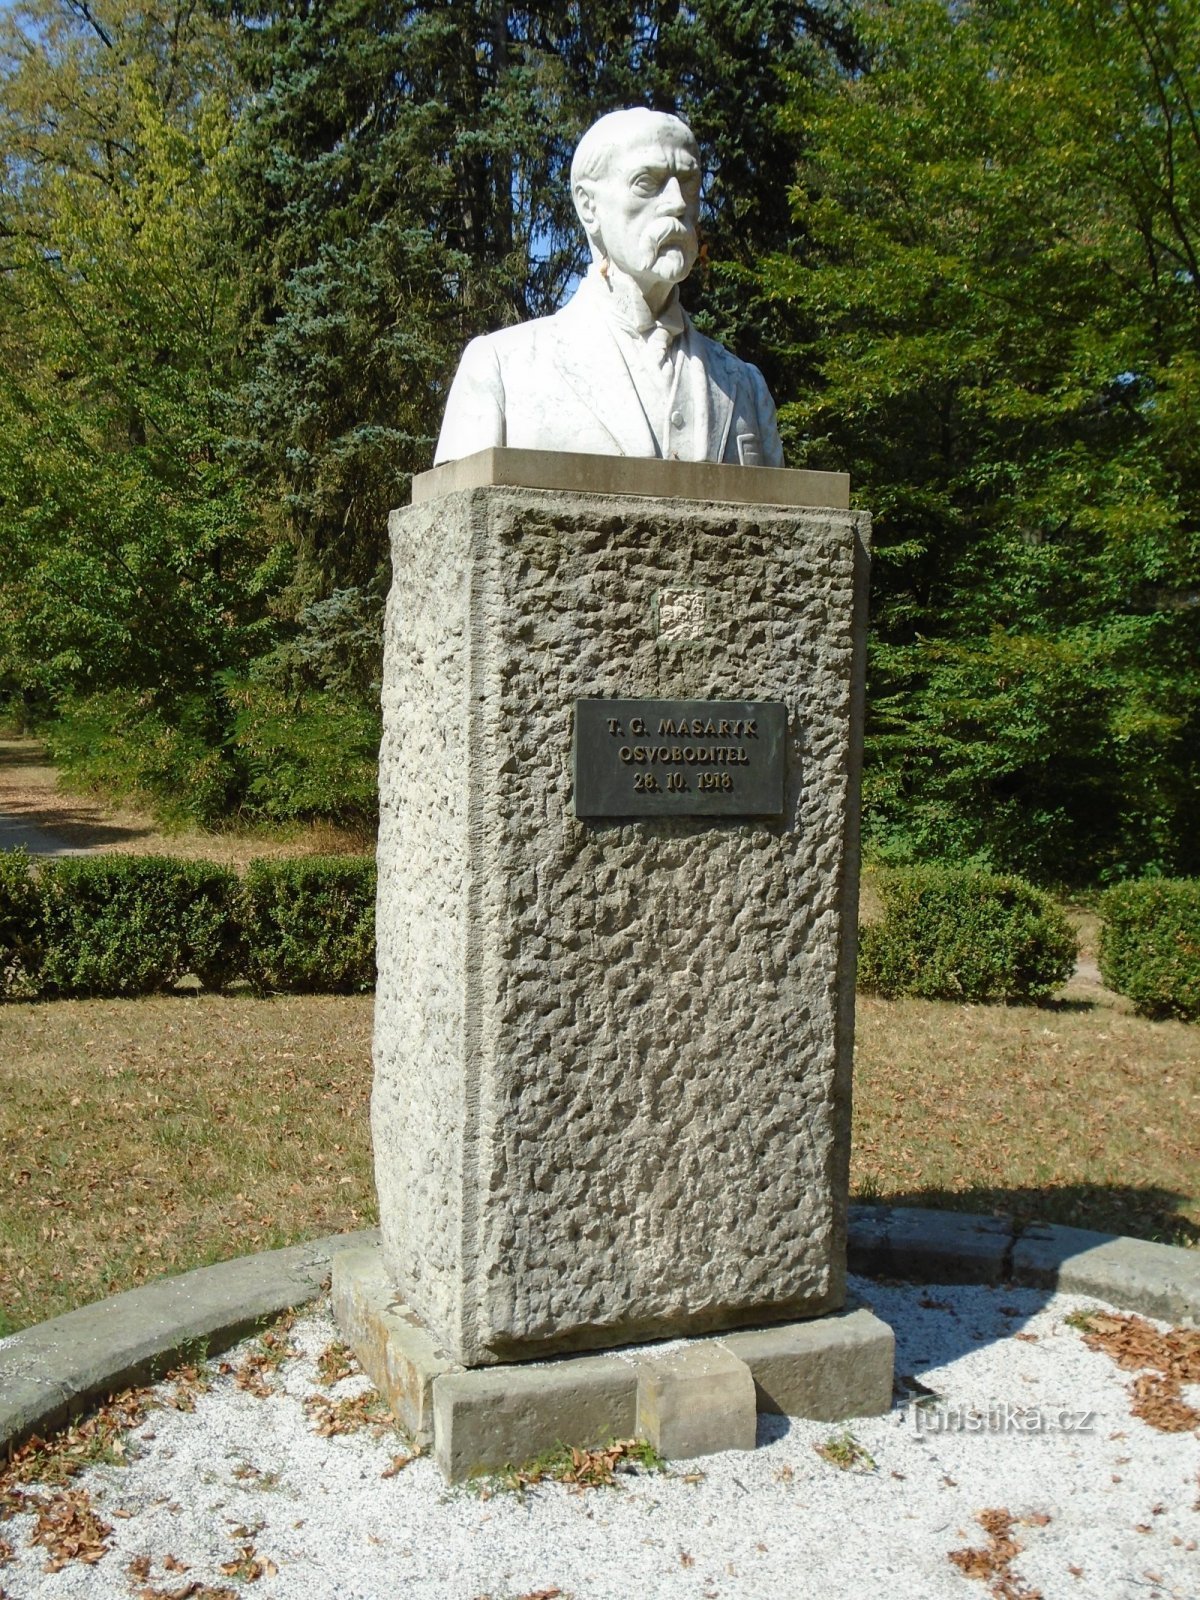 Pomník T. G. Masaryka v Masarykových sadech (Josefov, 17.8.2018)